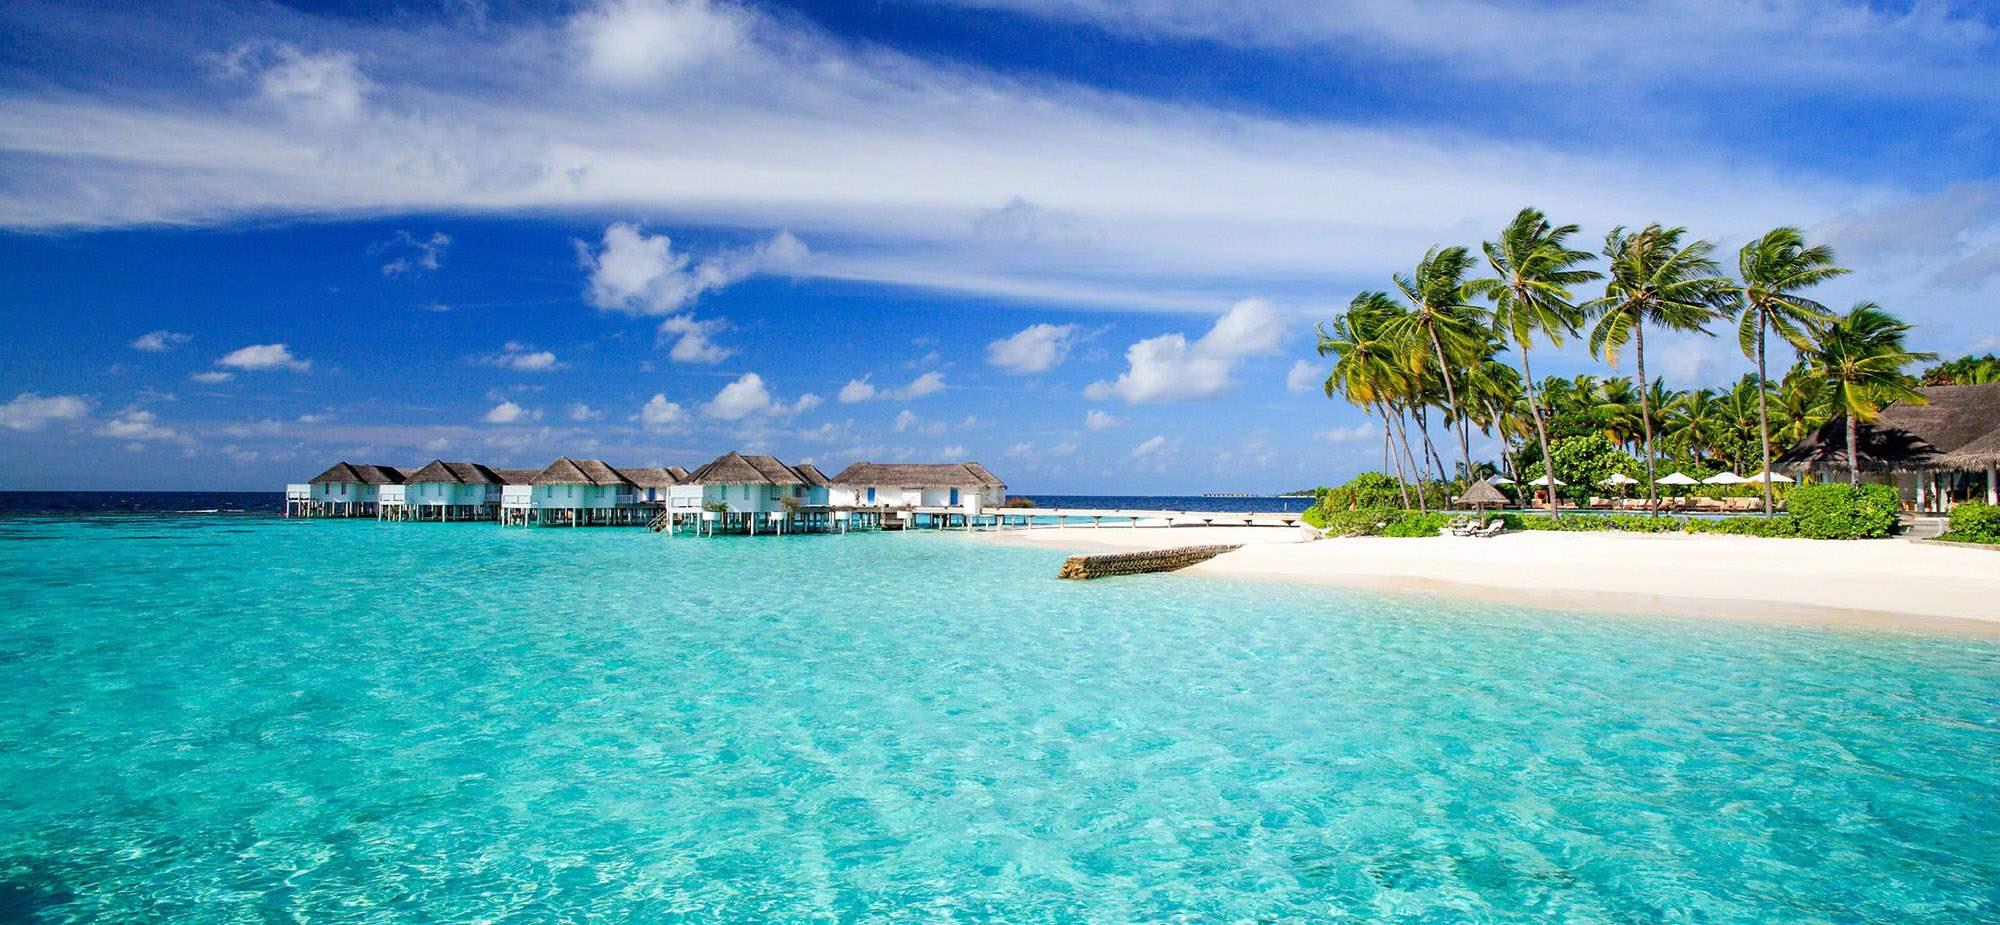 Мальдіви це острівна держава в Індійському океані, на південь-захід від Шрі-Ланки